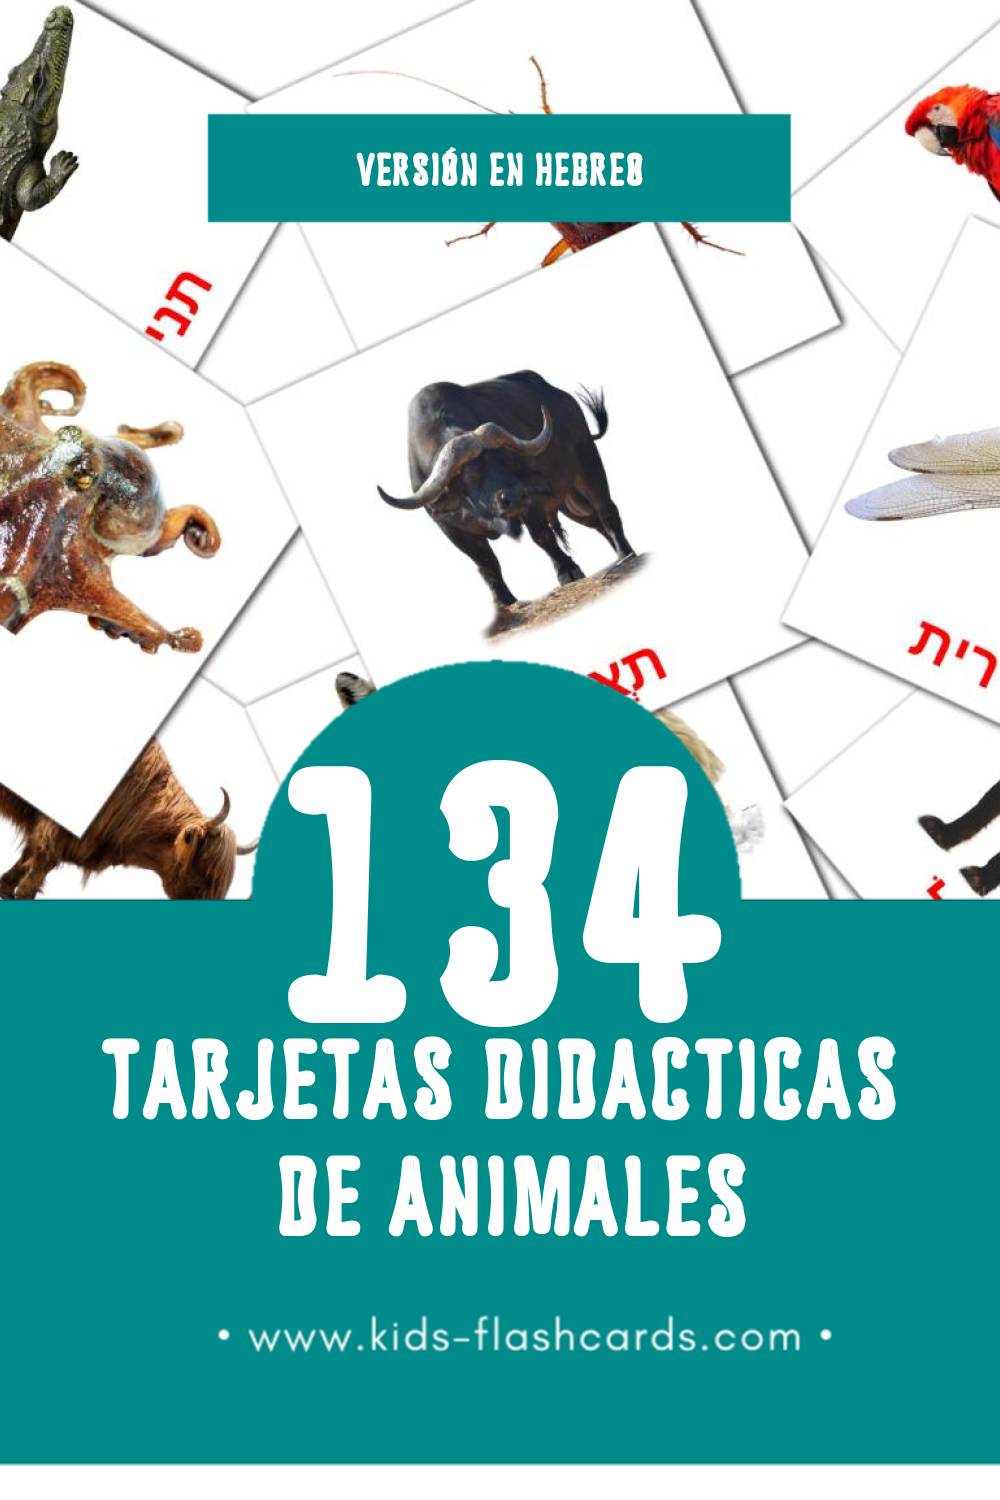 Tarjetas visuales de חיות para niños pequeños (134 tarjetas en Hebreo)